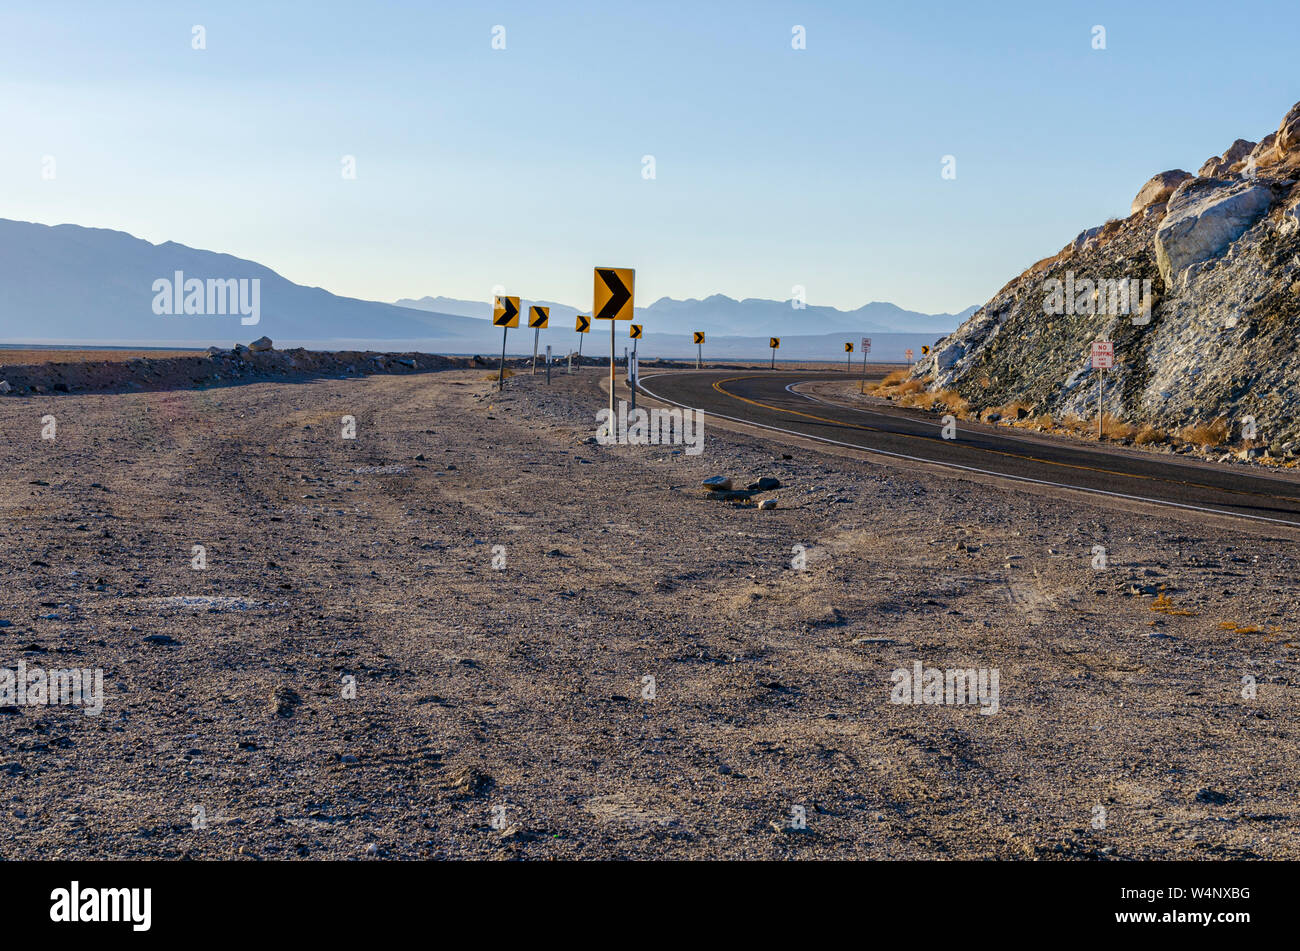 Desert route tournant autour de paroi rocheuse avec ciel voilé au-delà des montagnes du désert. La signalisation routière indiquant une route en courbe. Banque D'Images